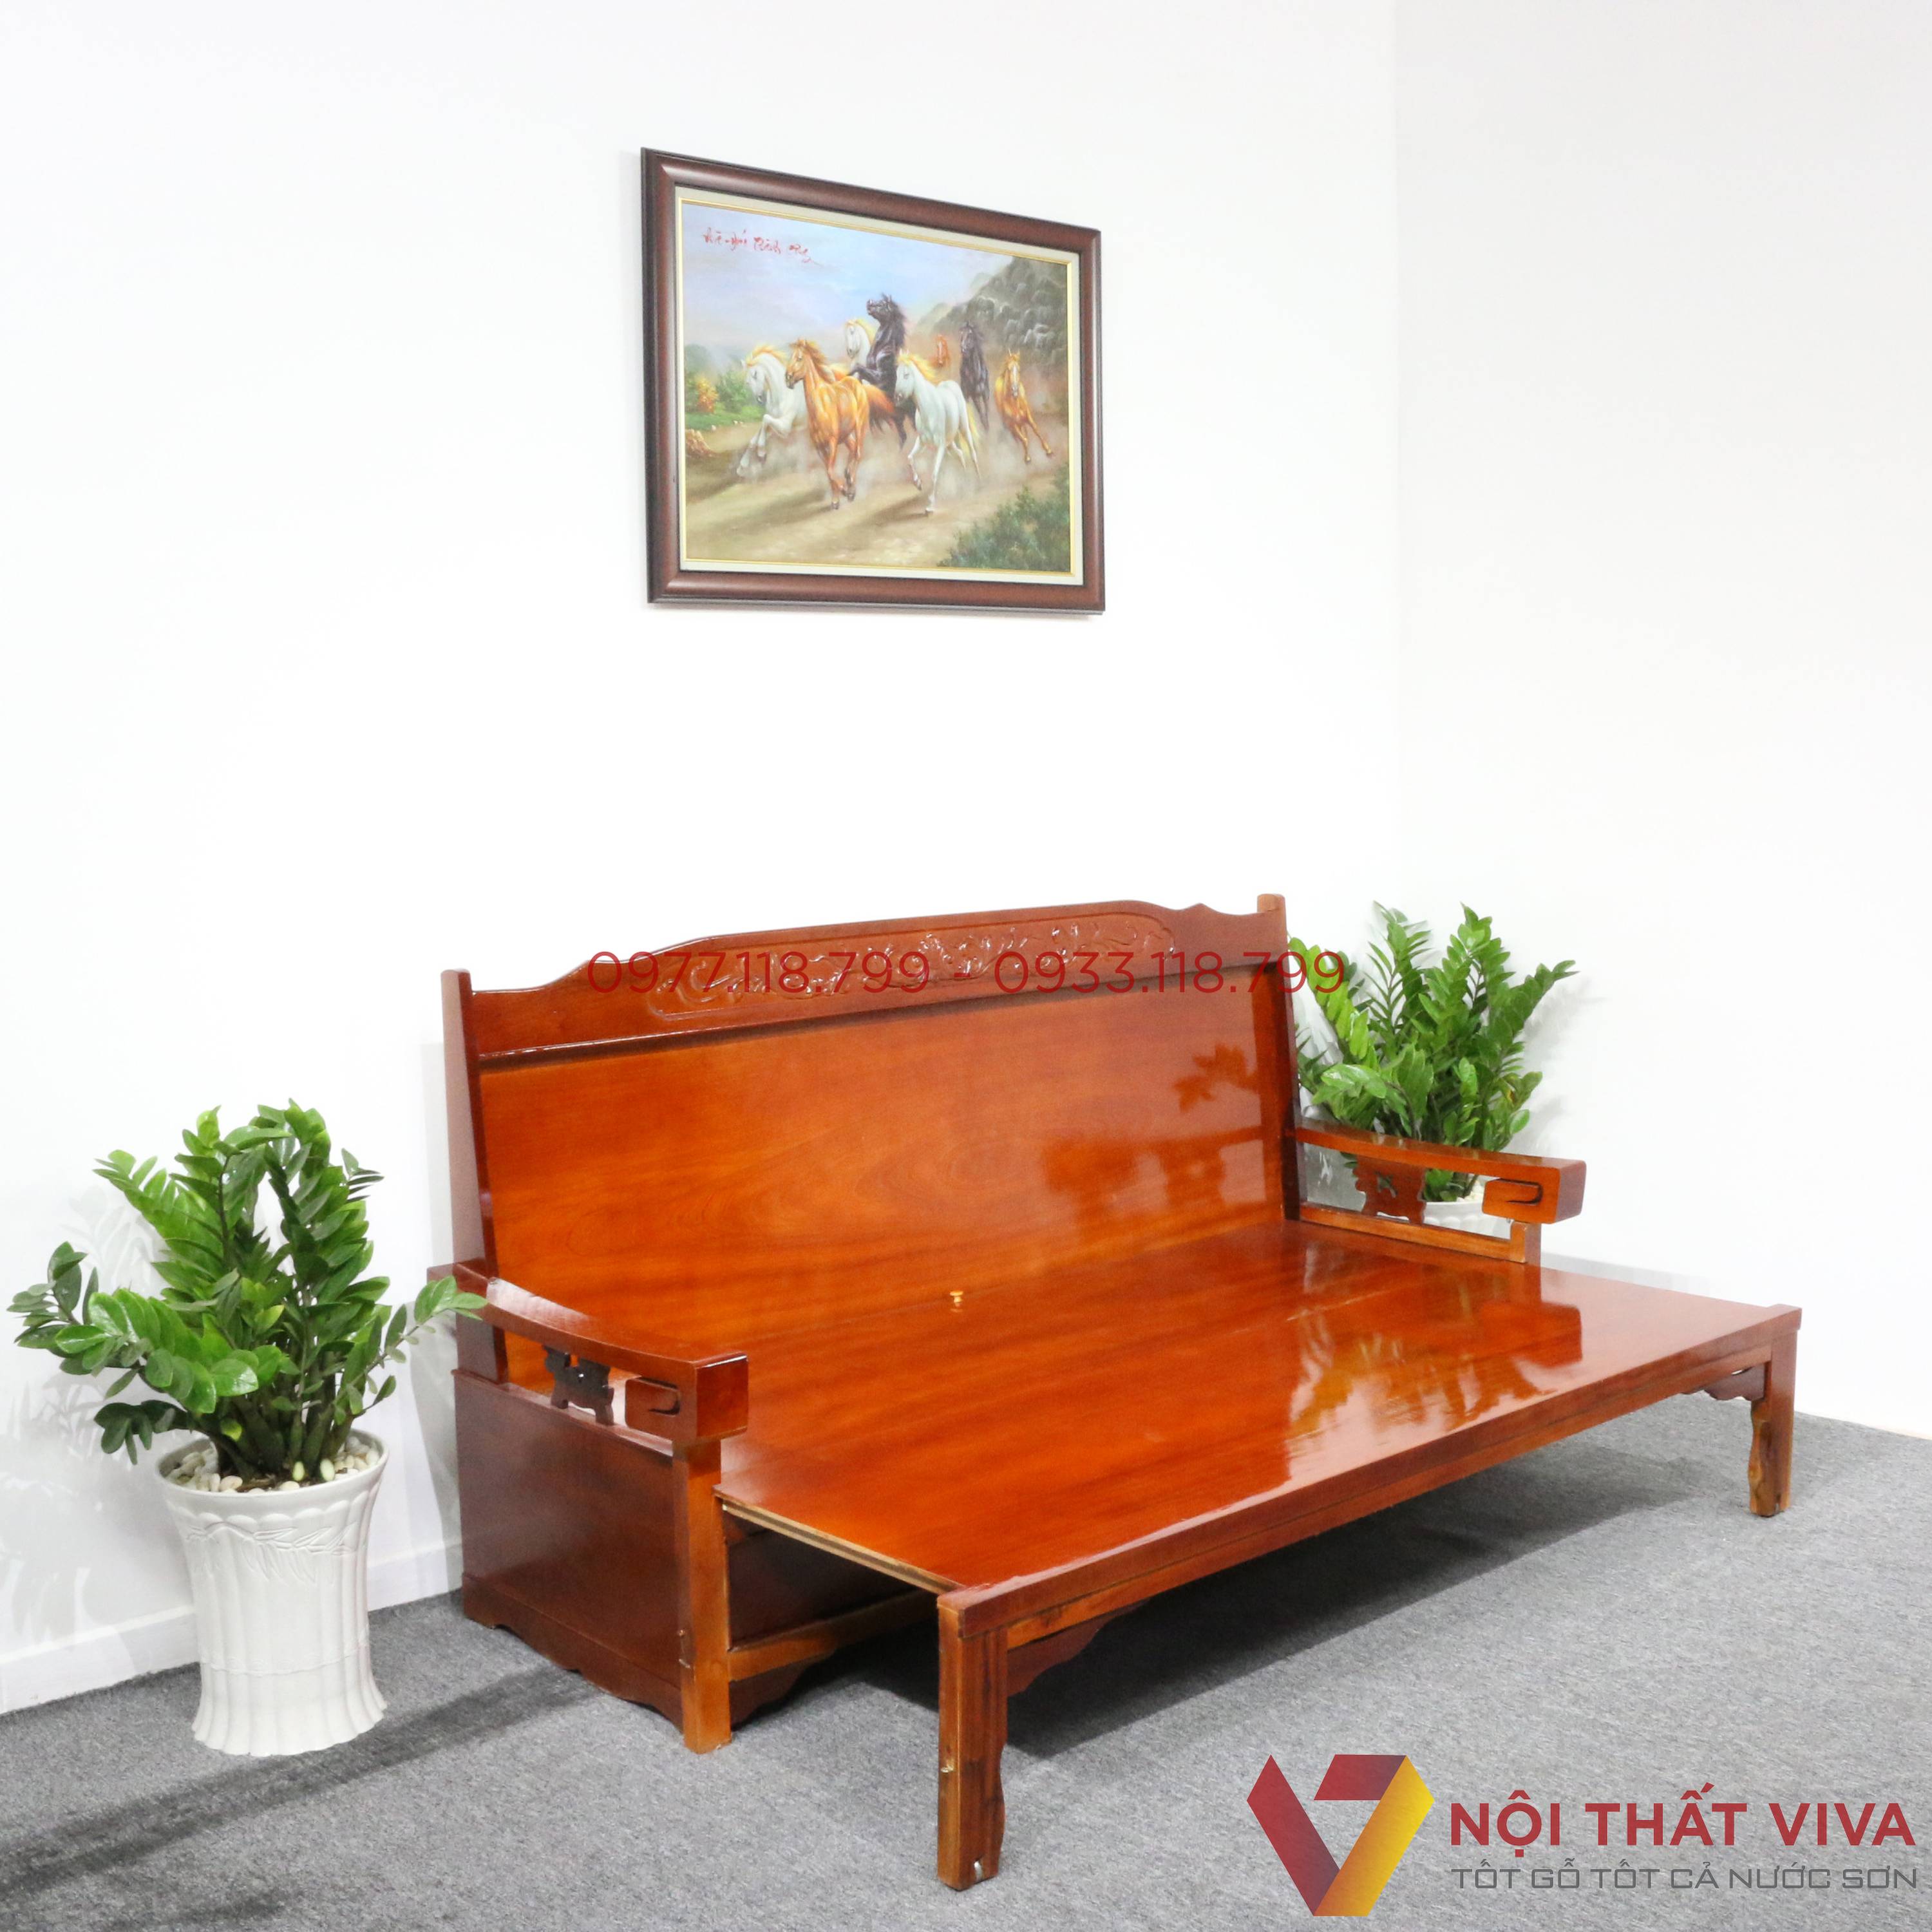 Nên Mua Sofa Giường Gỗ Giá Rẻ TPHCM Ở Đâu Uy Tín, Vừa Đẹp Lại Vừa Bền?